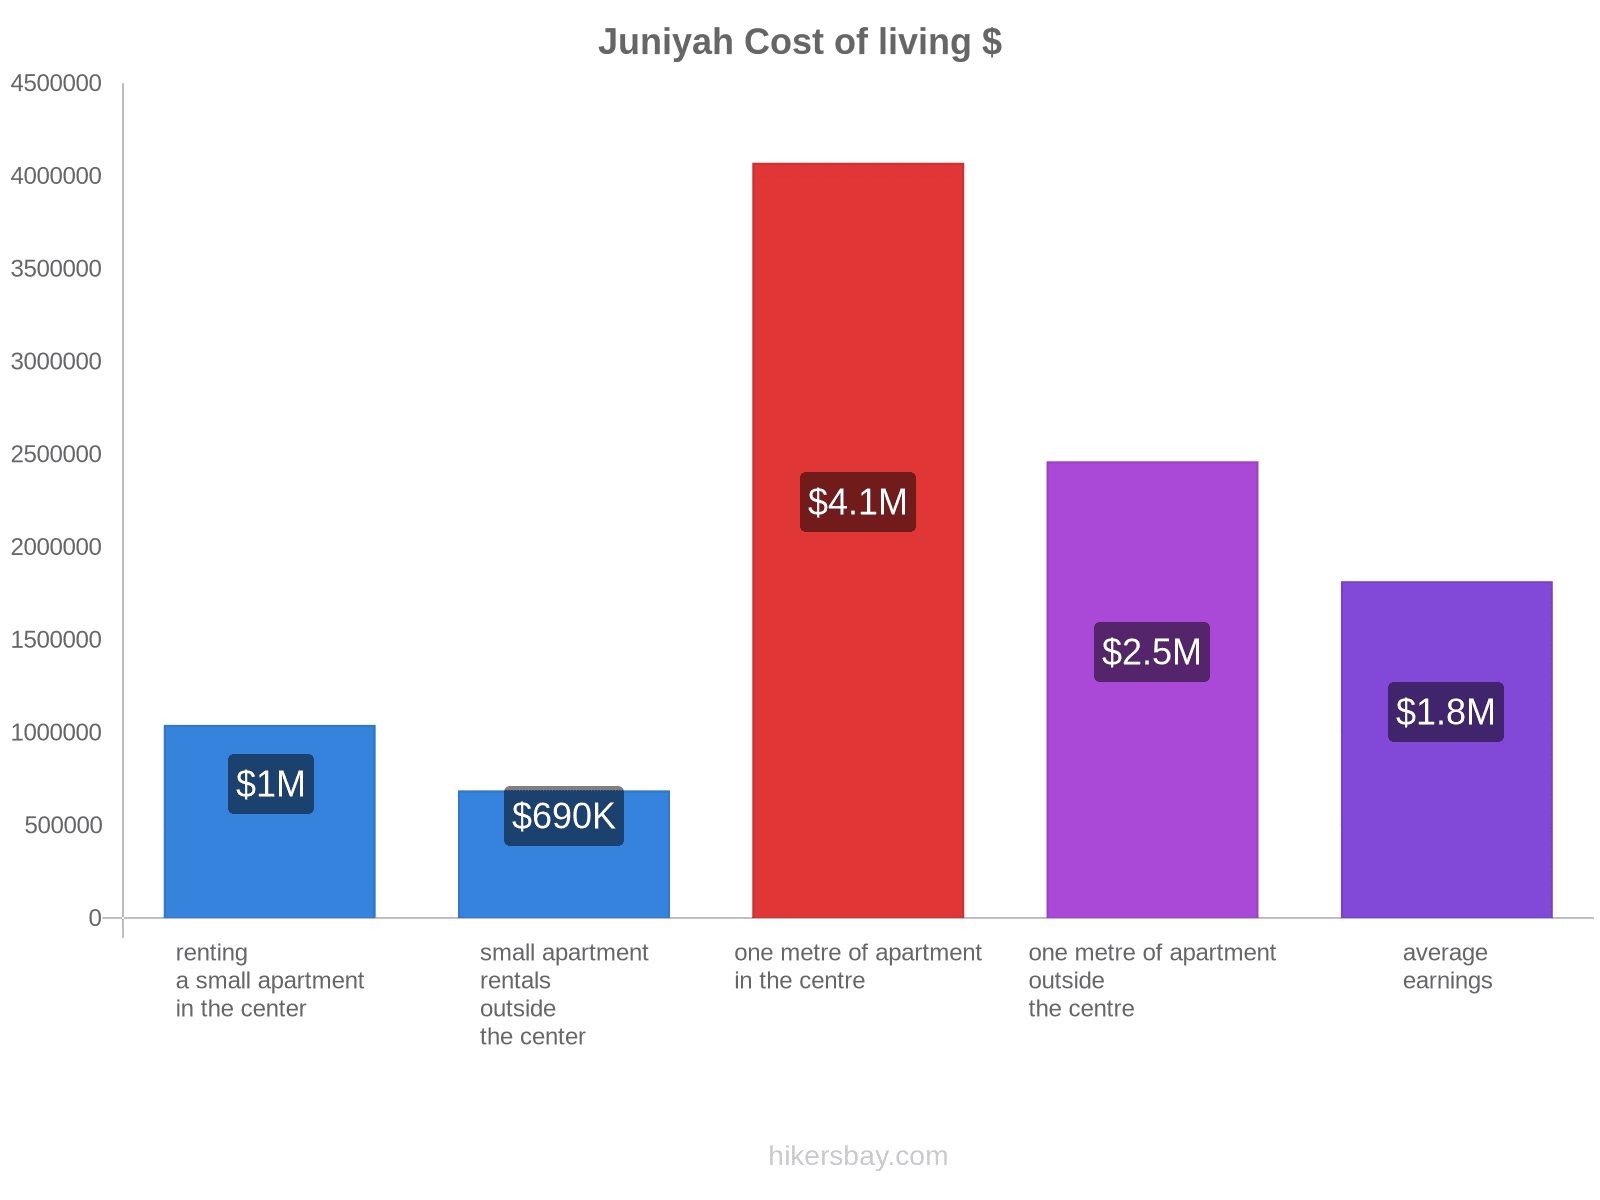 Juniyah cost of living hikersbay.com